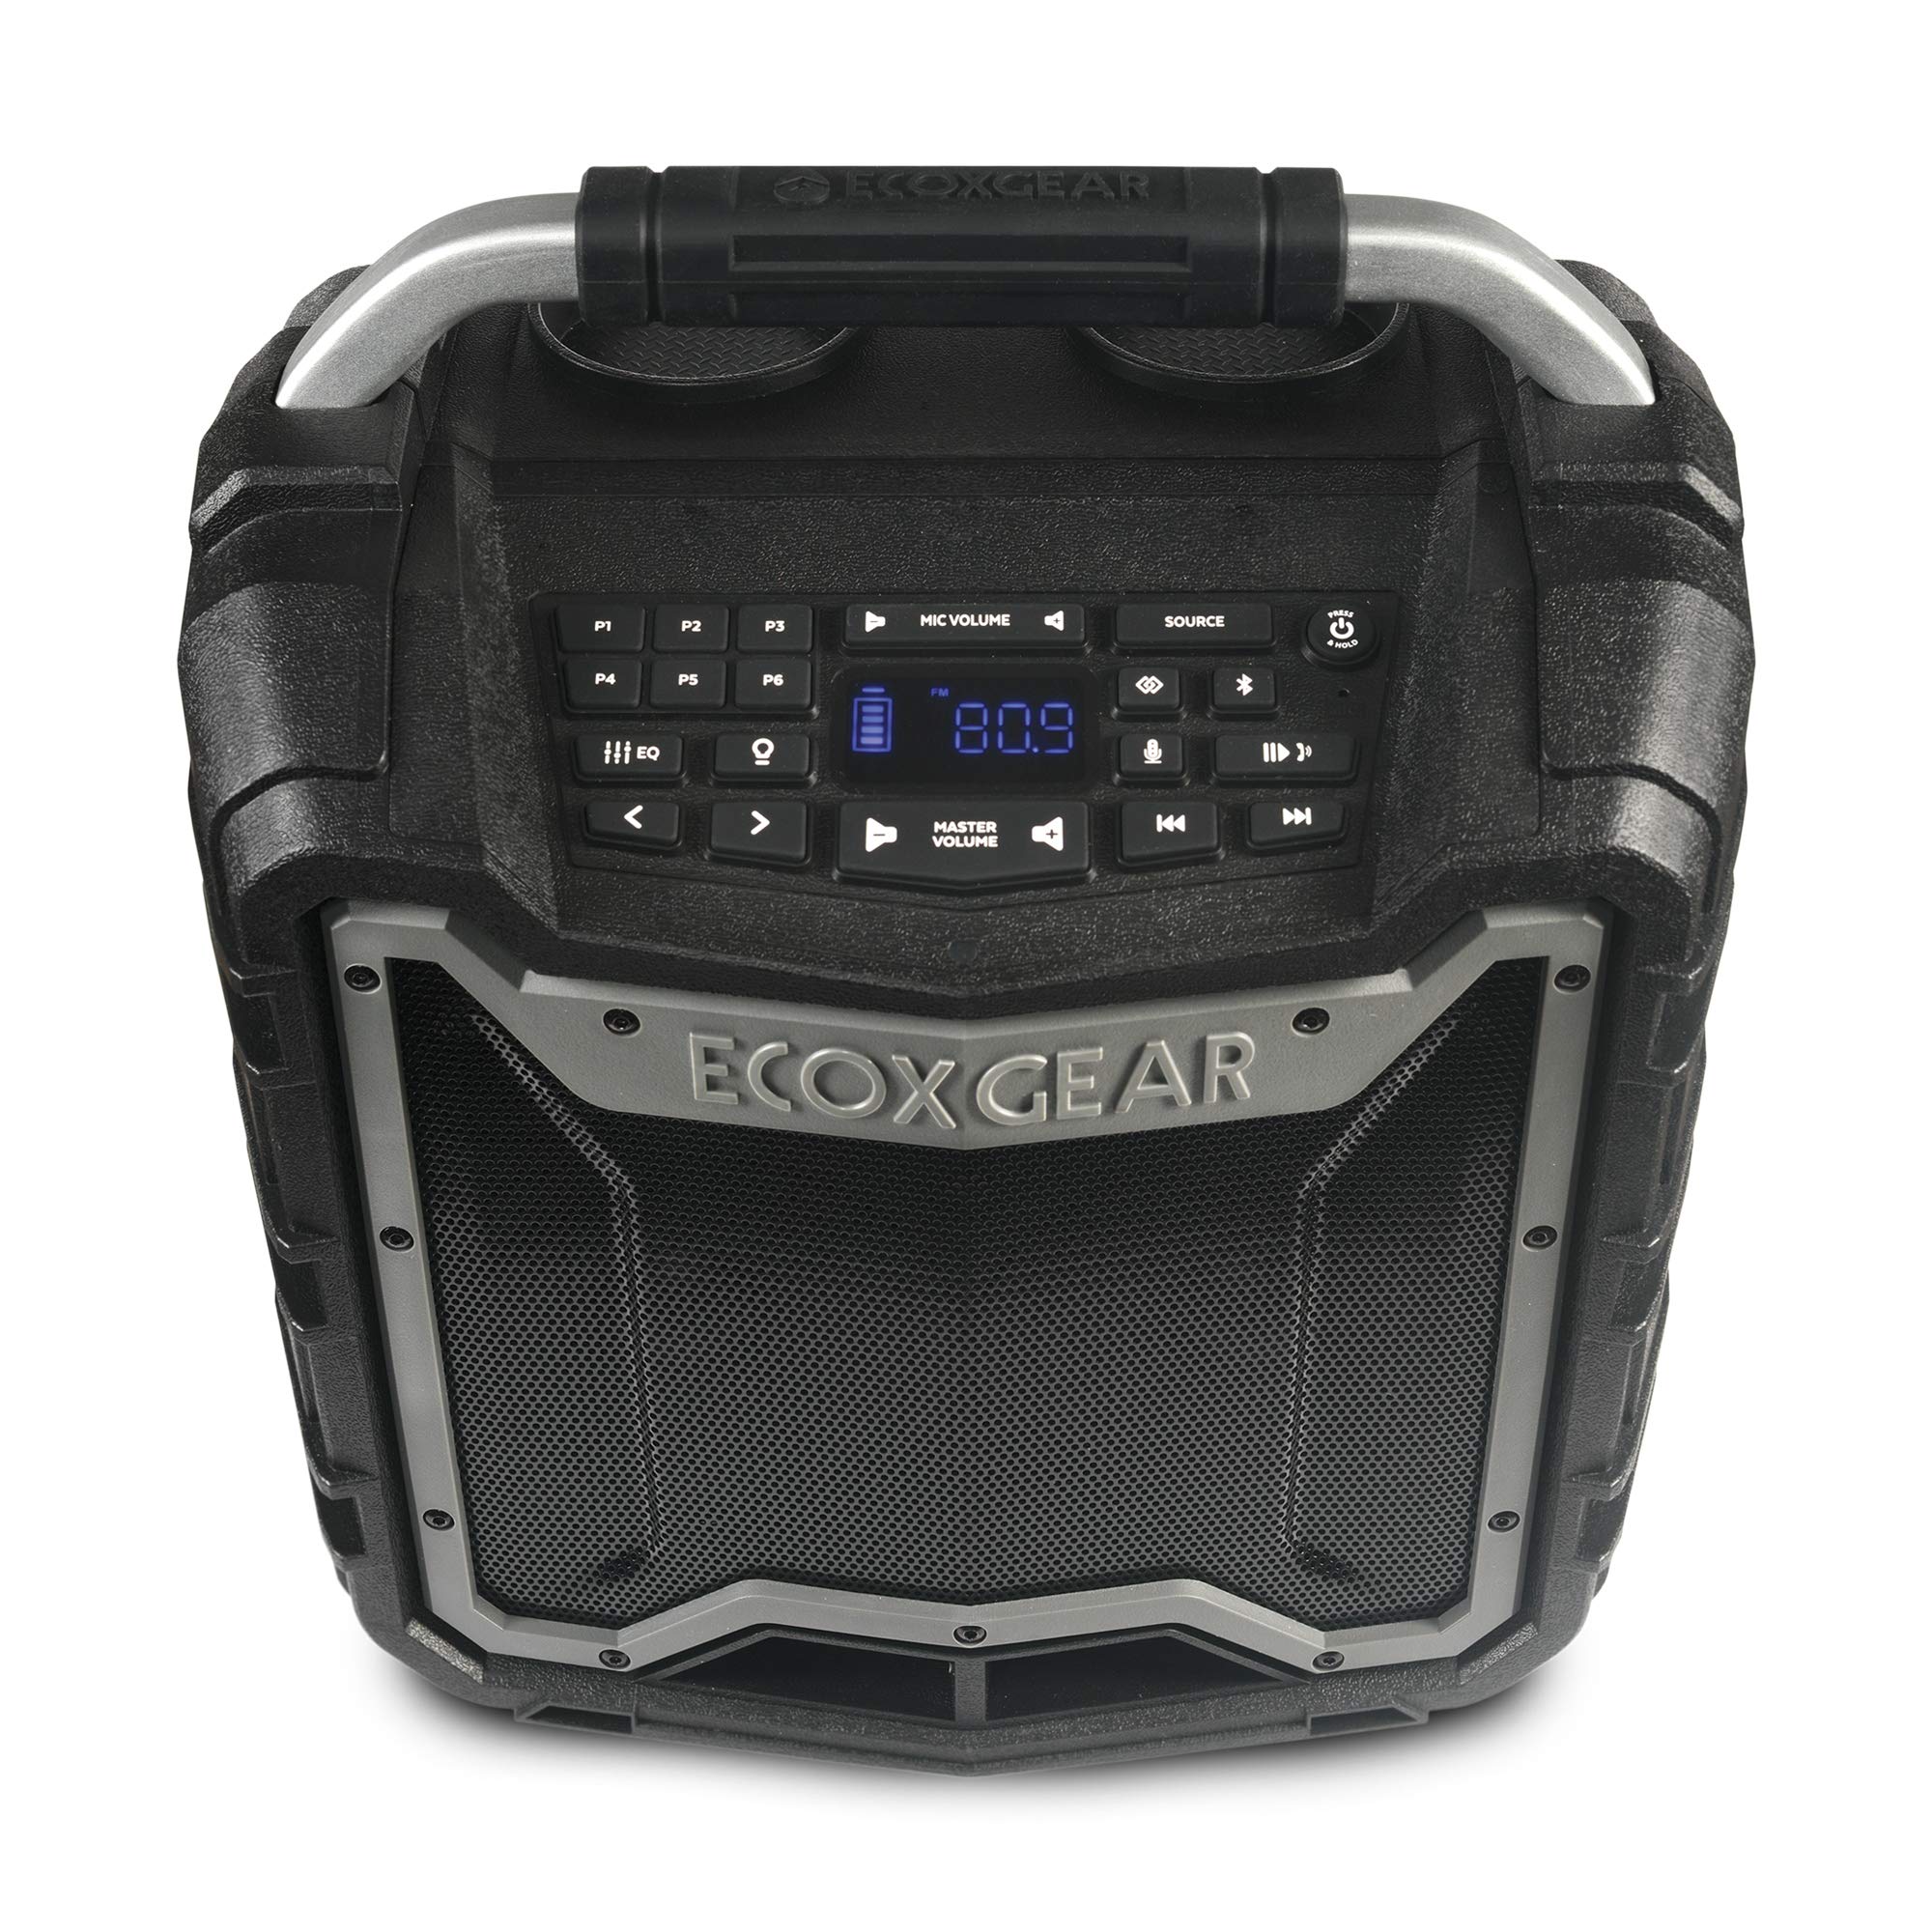 ECOXGEAR EcoTrek GDI-EXTRK210 resistente al agua flotante portátil Bluetooth inalámbrico 100 vatios estéreo altavoz inteligente y sistema PA (gris)